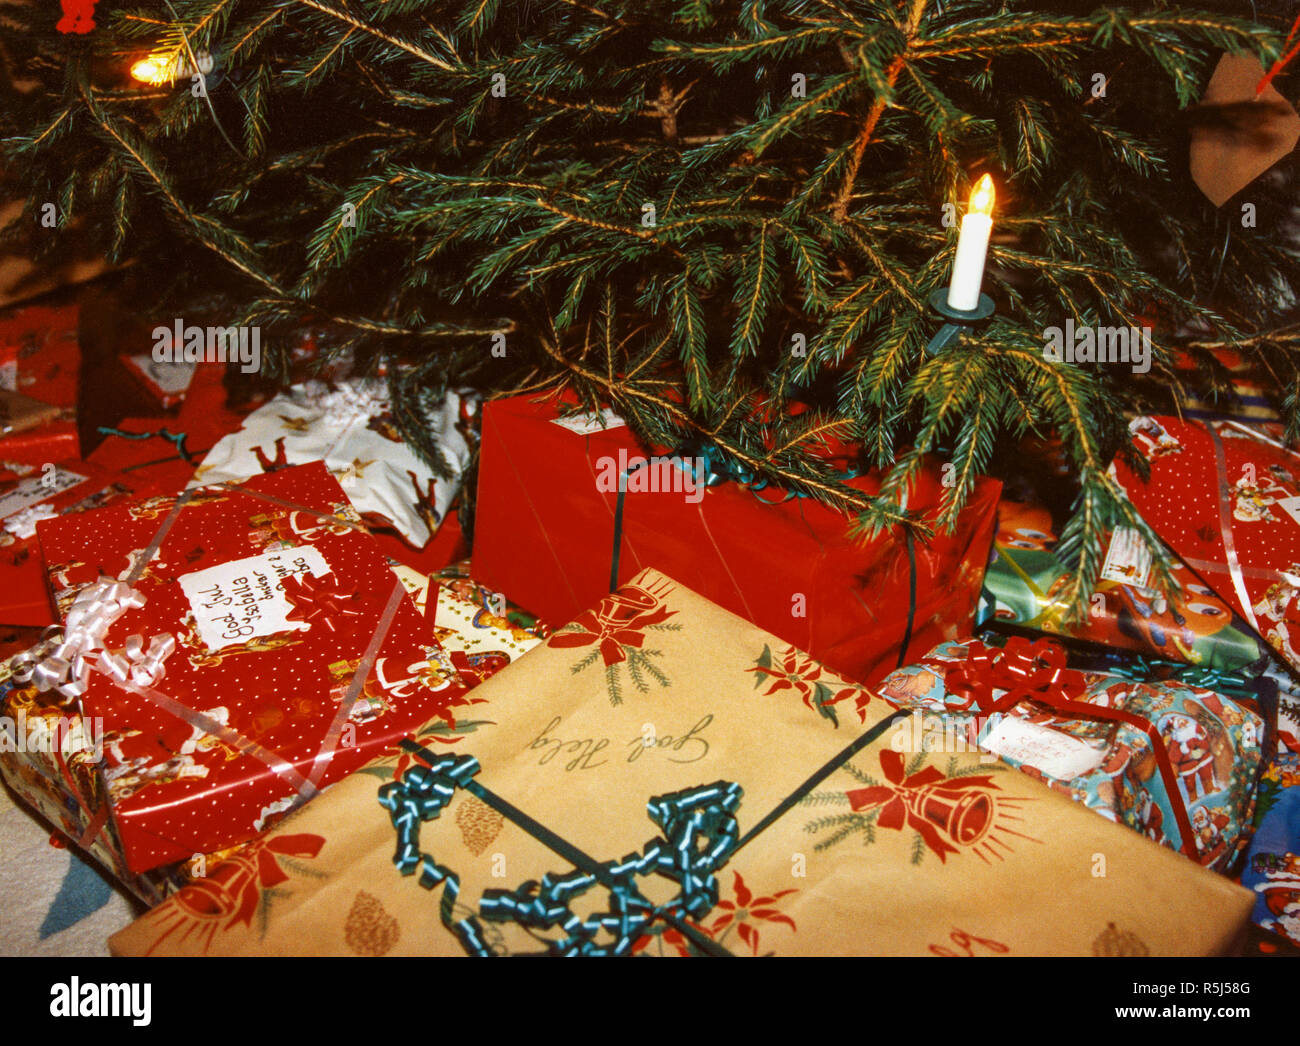 Regali Sotto L Albero Di Natale.I Regali Di Natale Sotto L Albero Di Natale Foto Stock Alamy